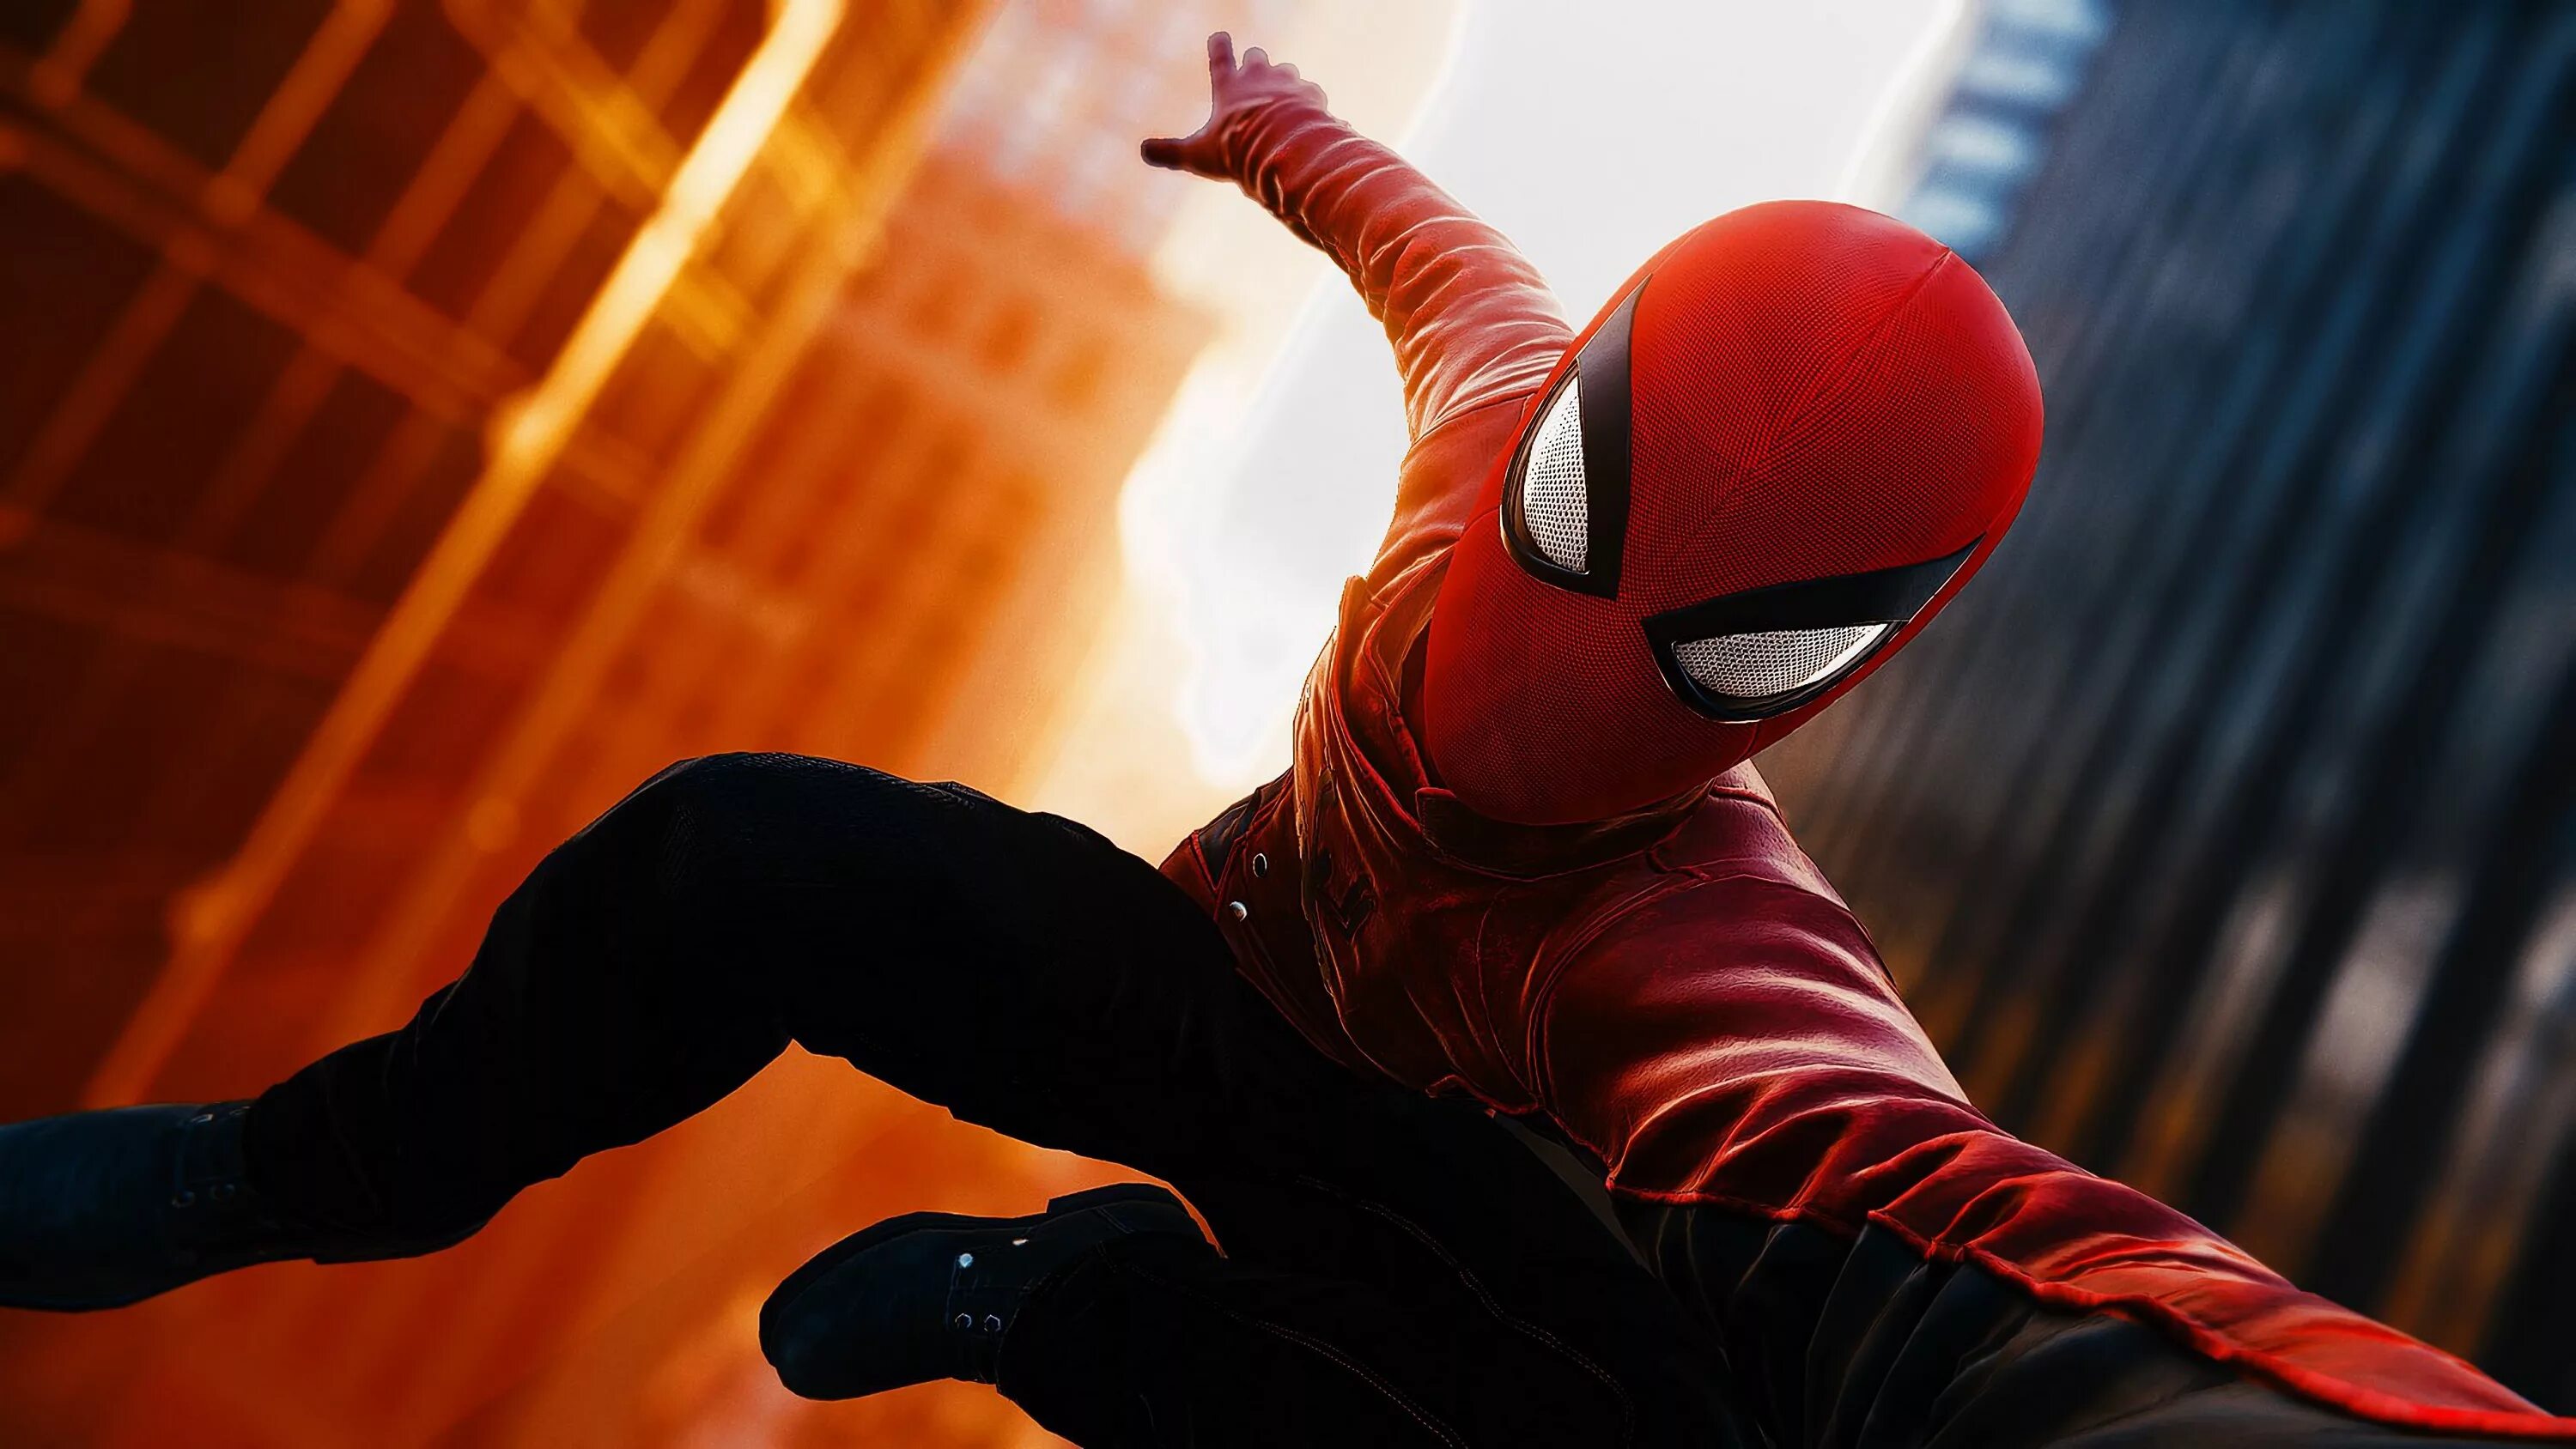 Spiderman. Спайдер Мэн. Spider man ps4. Spider-man (игра, 2018). Spider man ps4 человек паук.